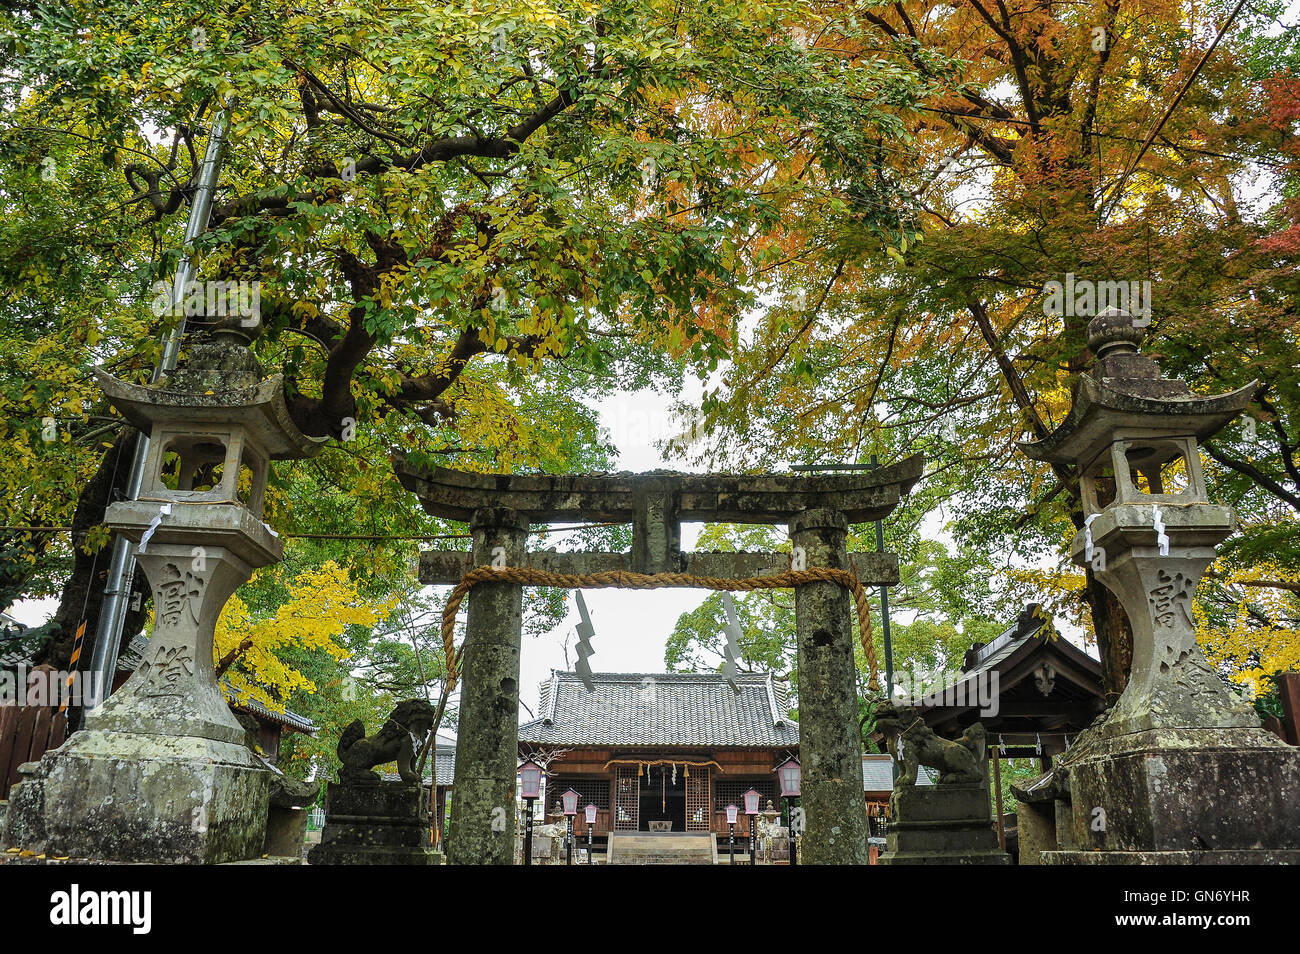 Shrine of Ureshino Onsen, Ureshino, Japan Stock Photo